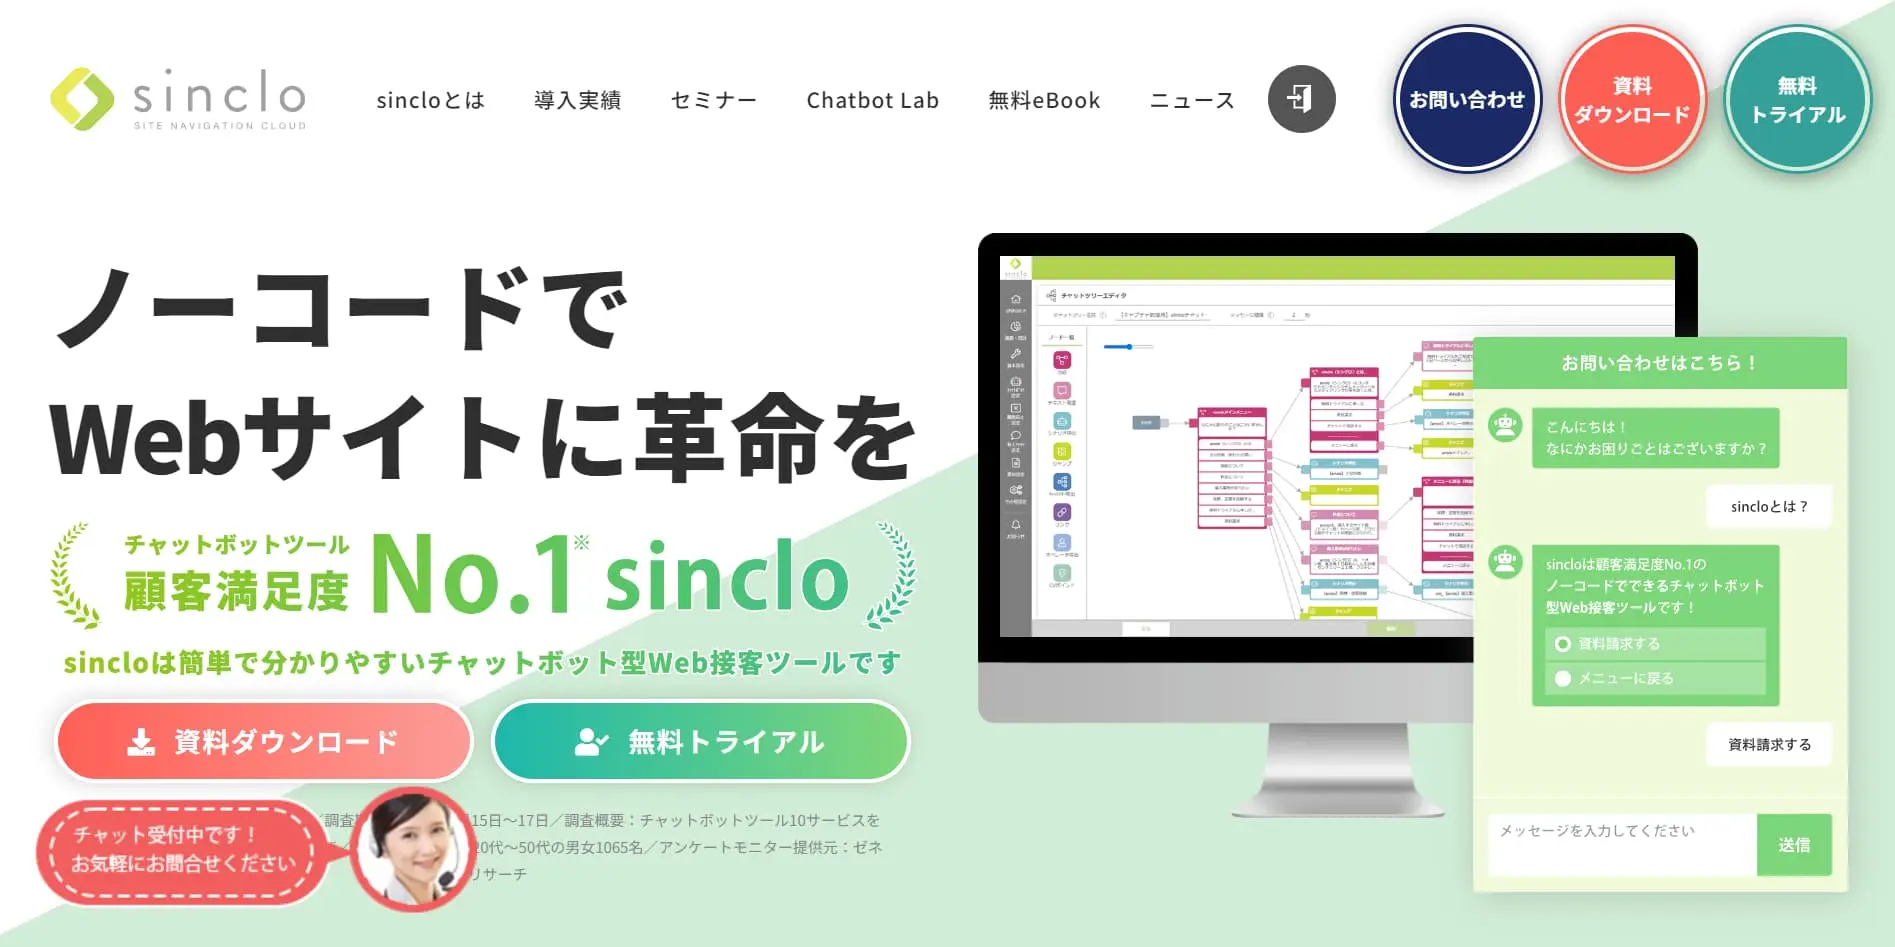 チャットボット型Web接客ツール「sinclo」